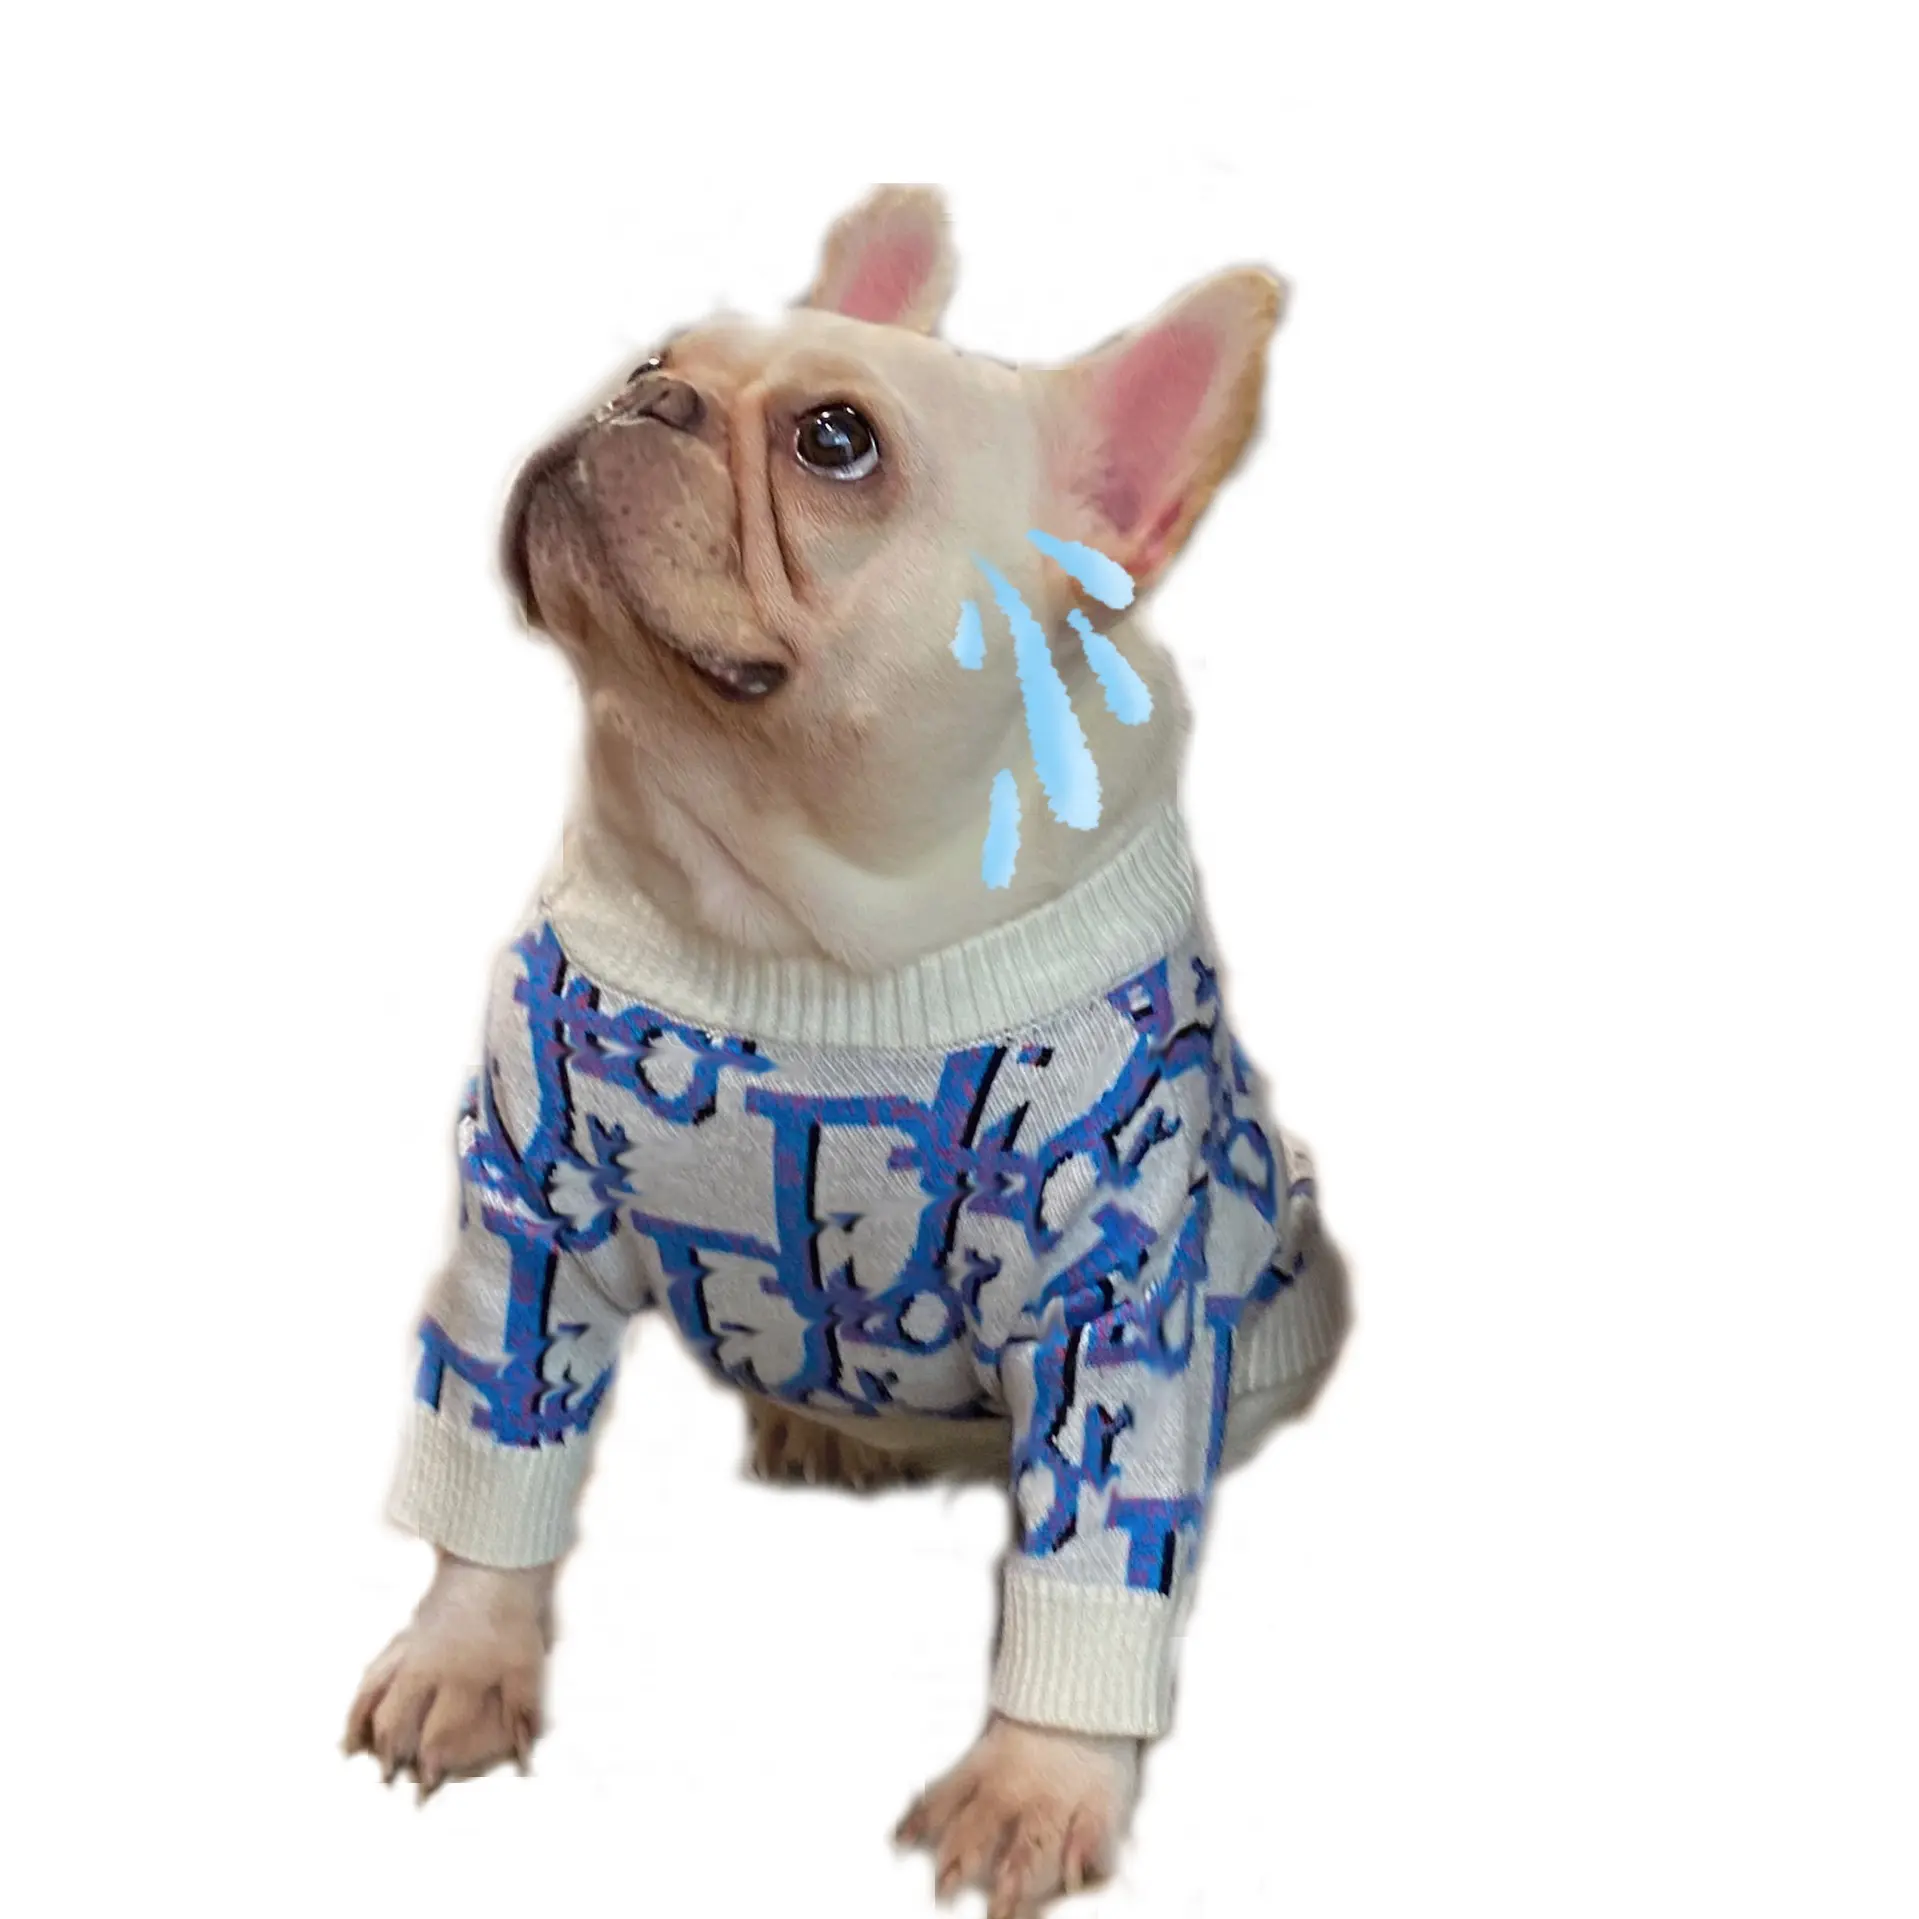 Оптовая продажа, одежда для домашних животных, свитер с двумя ногами, сине-белый свитер с надписью и полосками, сочетающийся цвет, свитер для кошек на осень и зиму